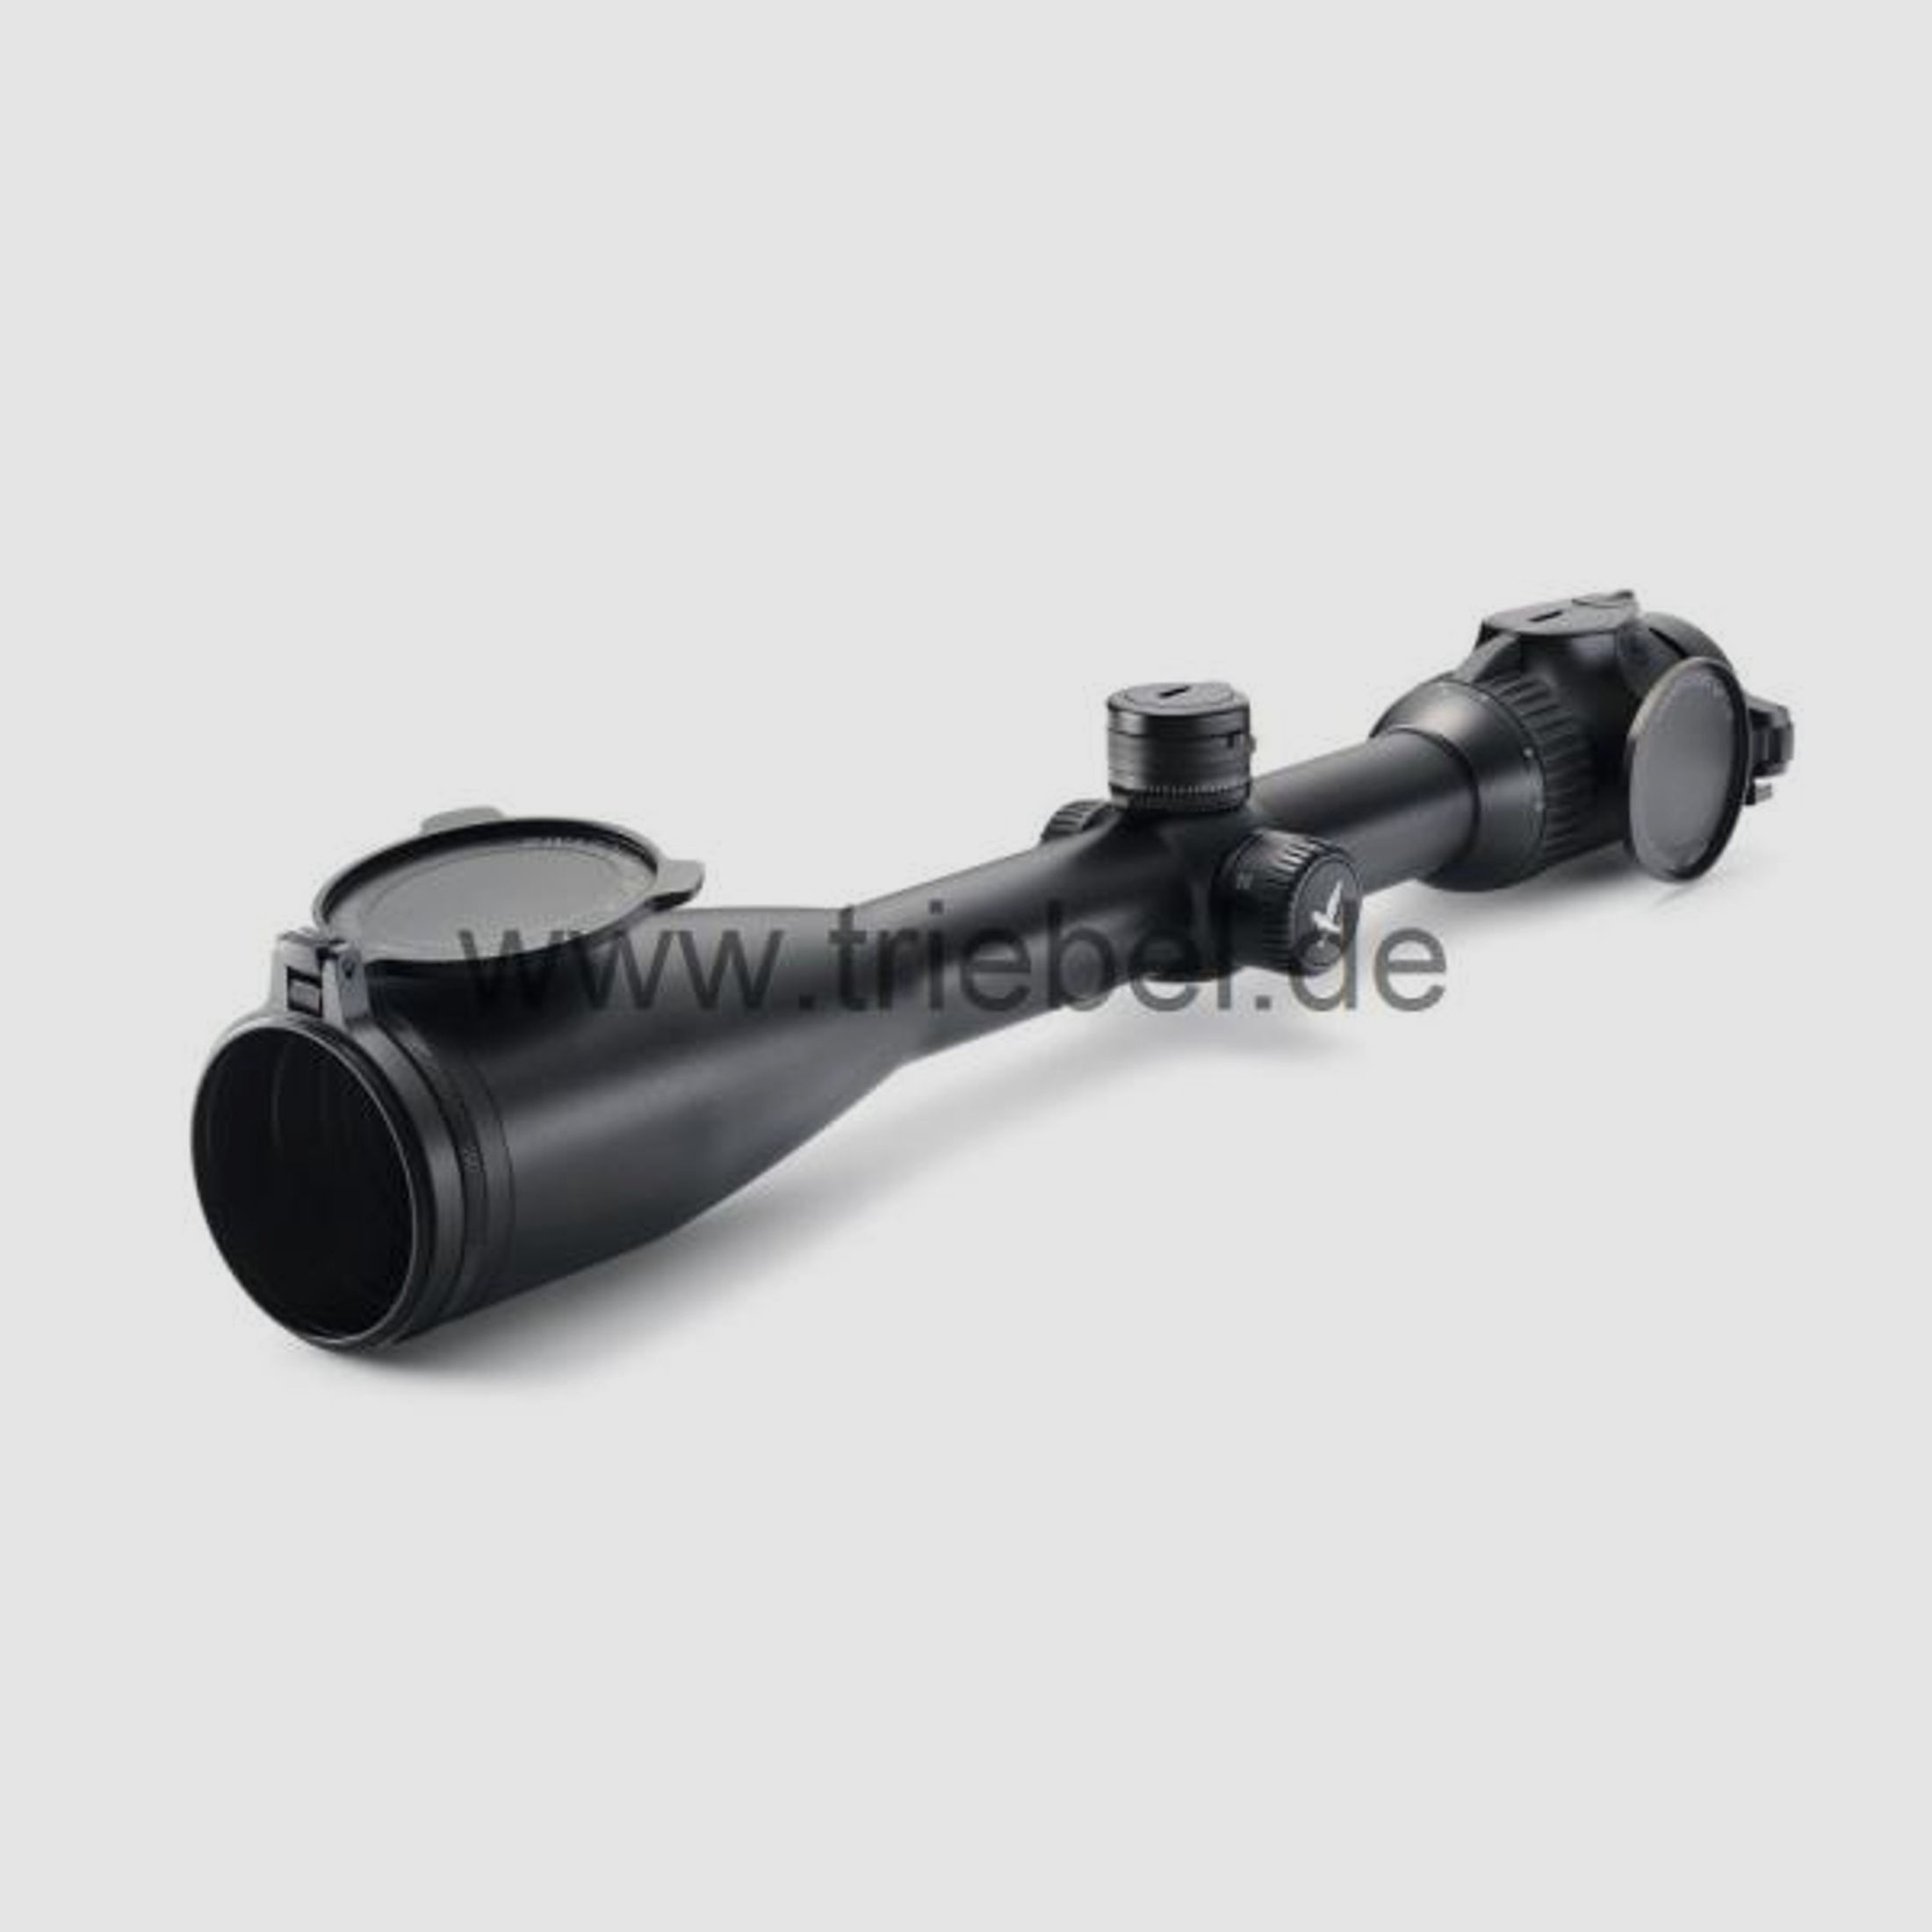 SWAROVSKI Zubehör für Zielfernrohre Objektivdeckel 24mm SLP-O-24 f. Z8i, Z6(i), Z5, Z3, X5(i)